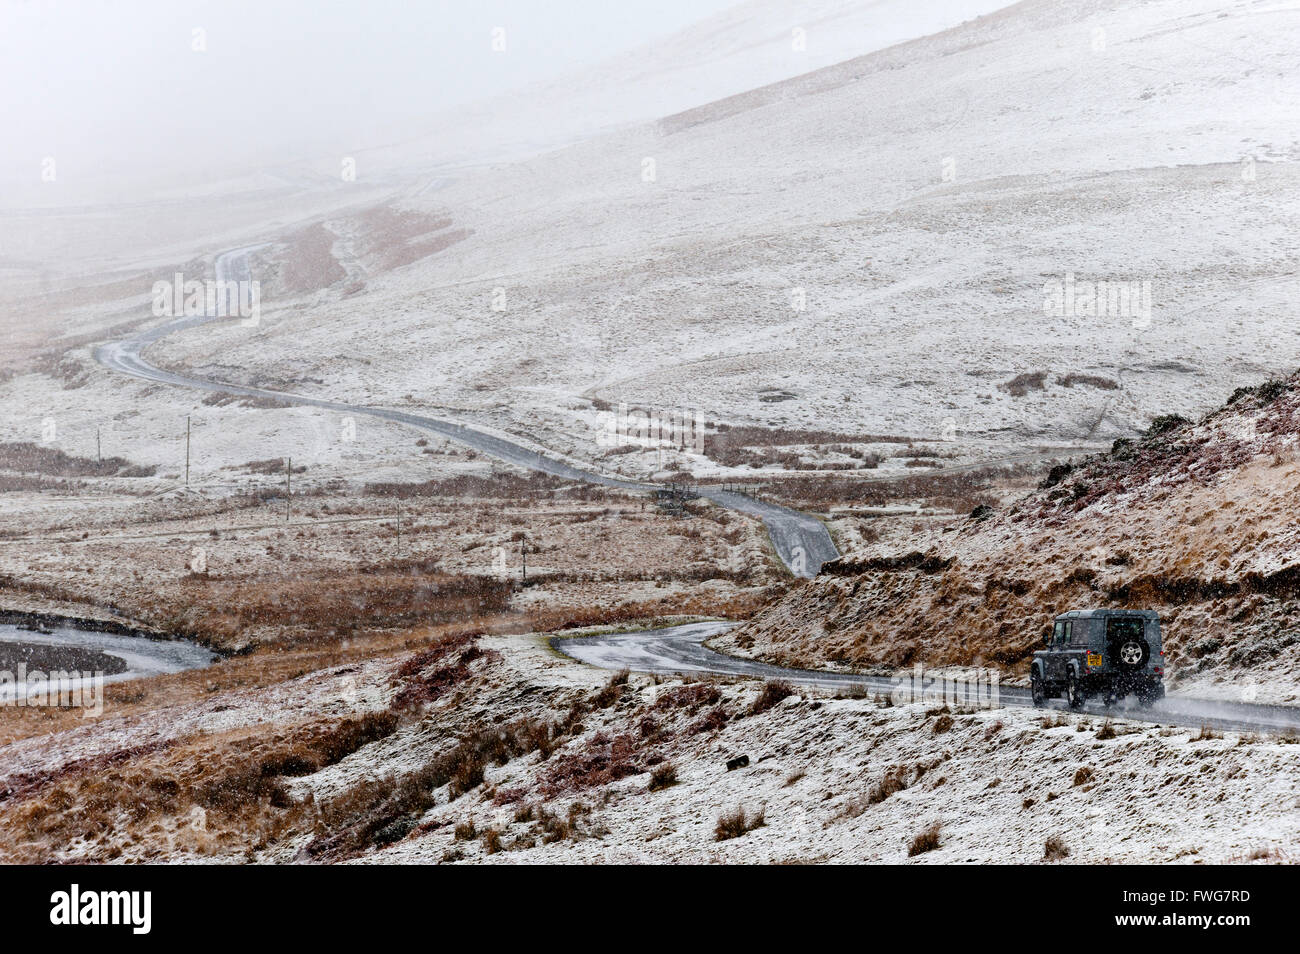 Un véhicule négocie une route à travers un paysage hivernal dans la région de la vallée de l'Elan en Powys, Pays de Galles, Royaume-Uni. Banque D'Images